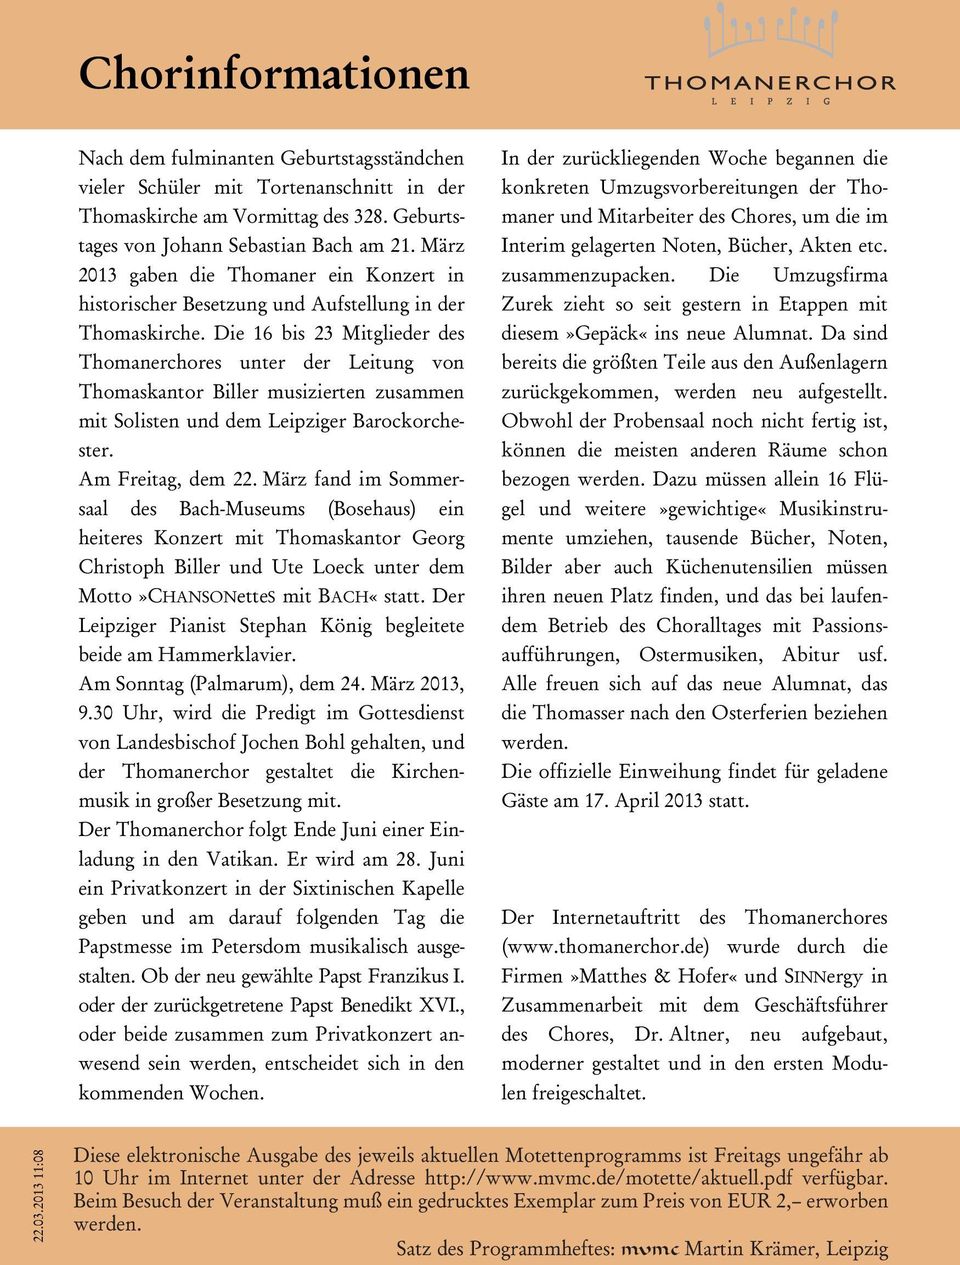 Die 16 bis 23 Mitglieder des Thomanerchores unter der Leitung von Thomaskantor Biller musizierten zusammen mit Solisten und dem Leipziger Barockorchester. Am Freitag, dem 22.